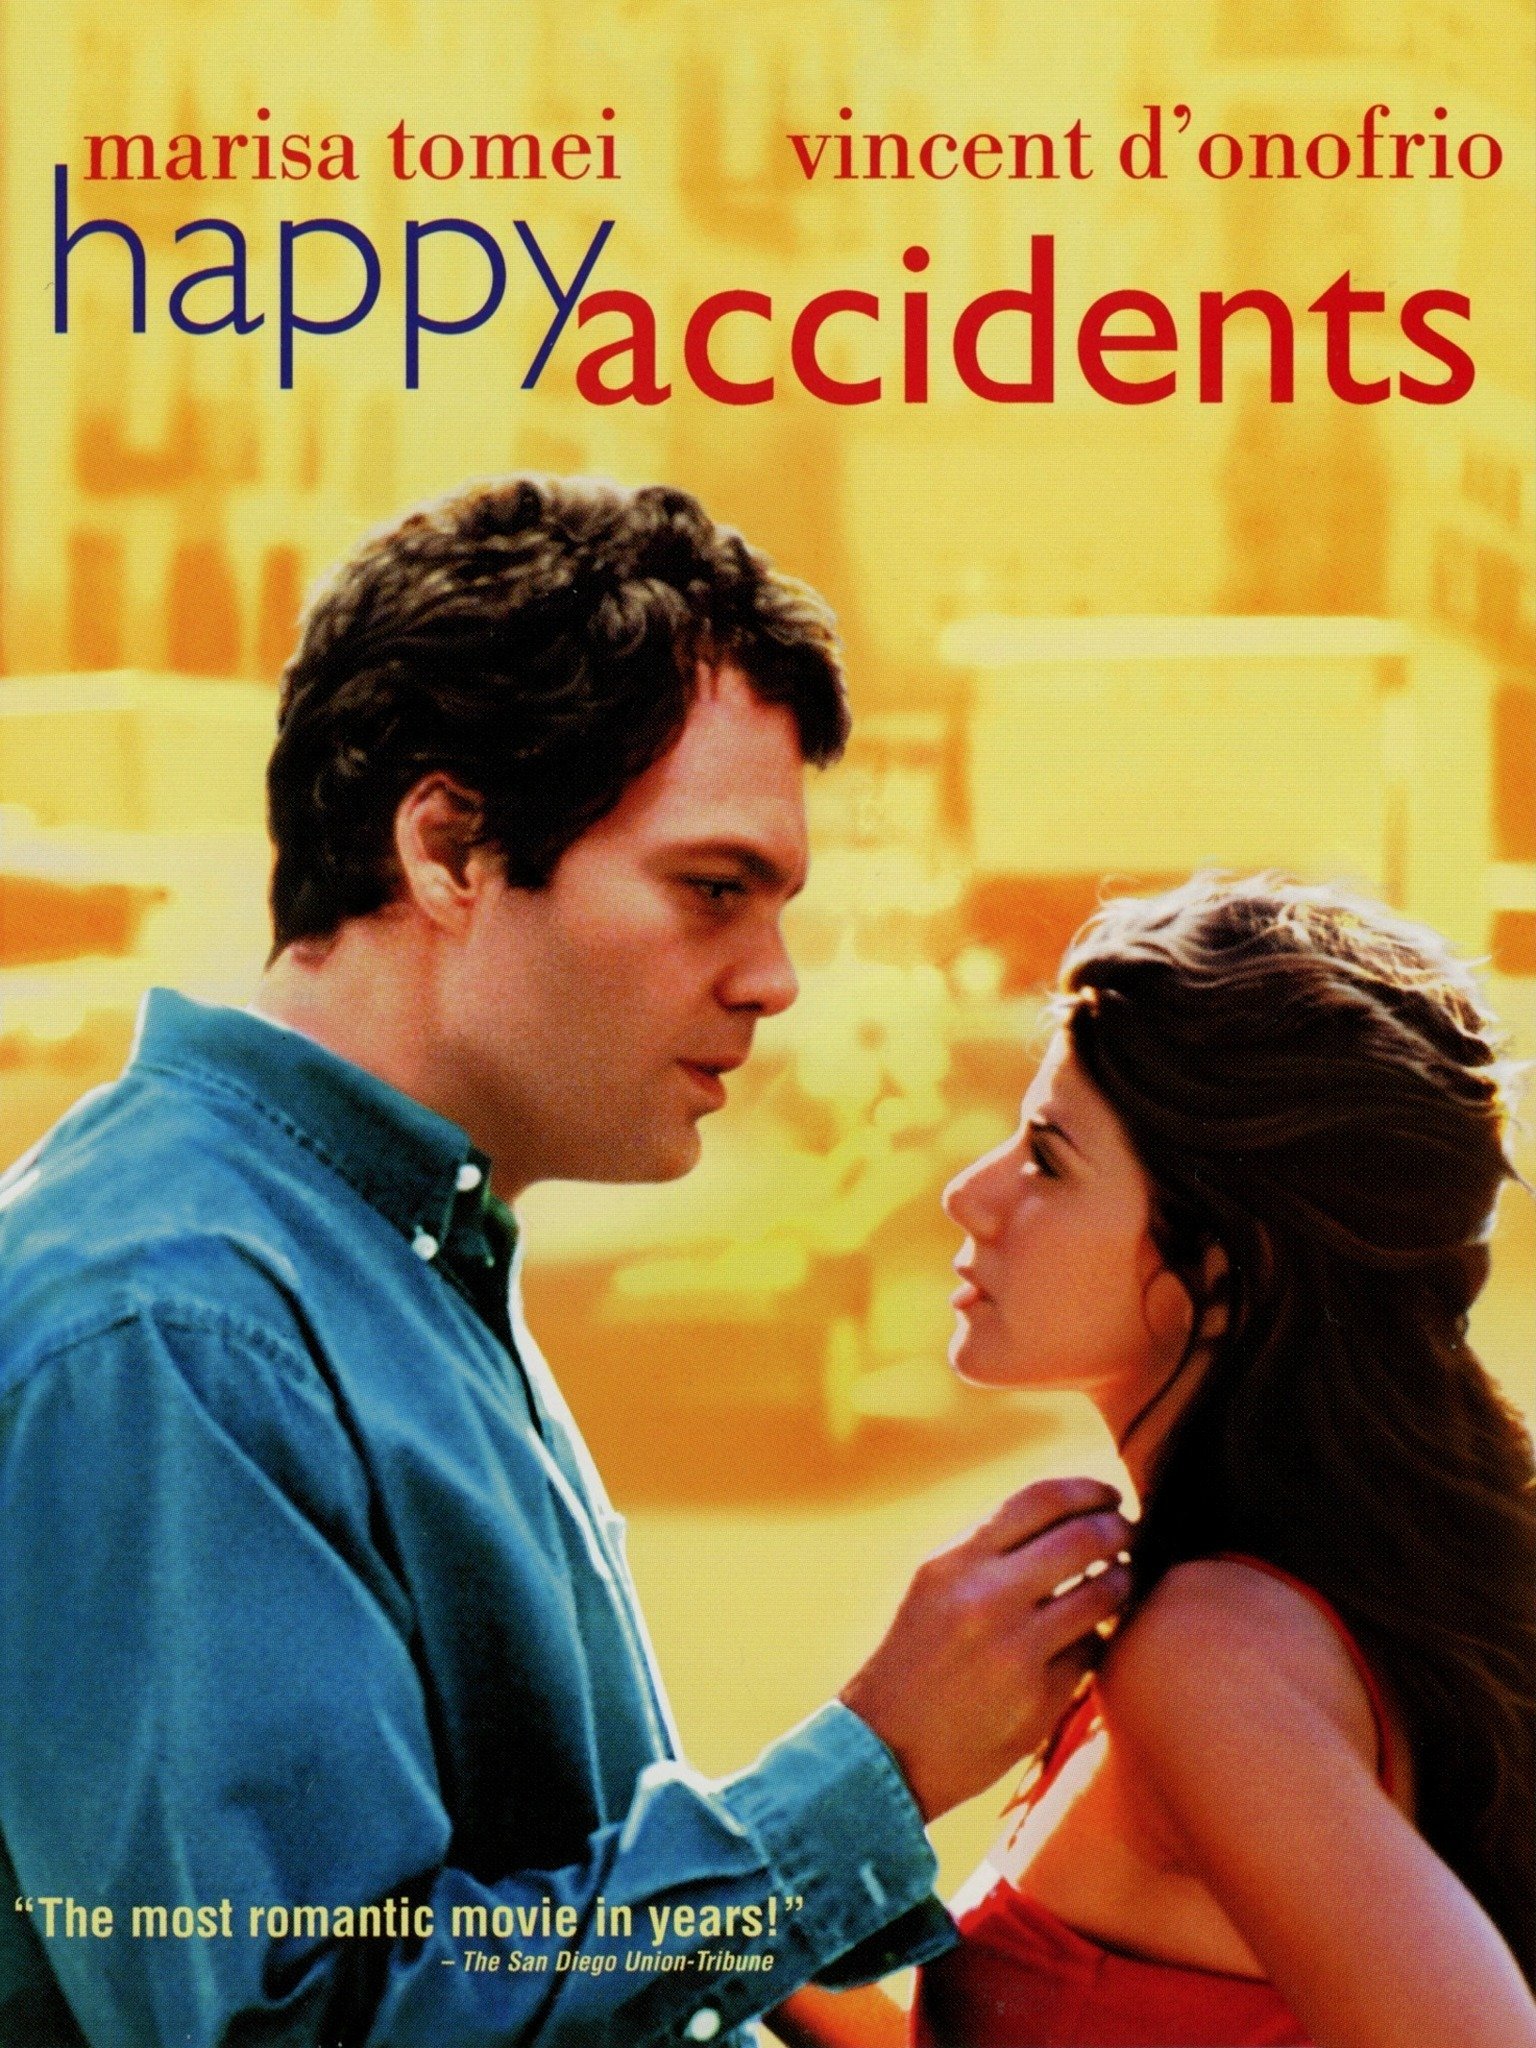 Happy accident